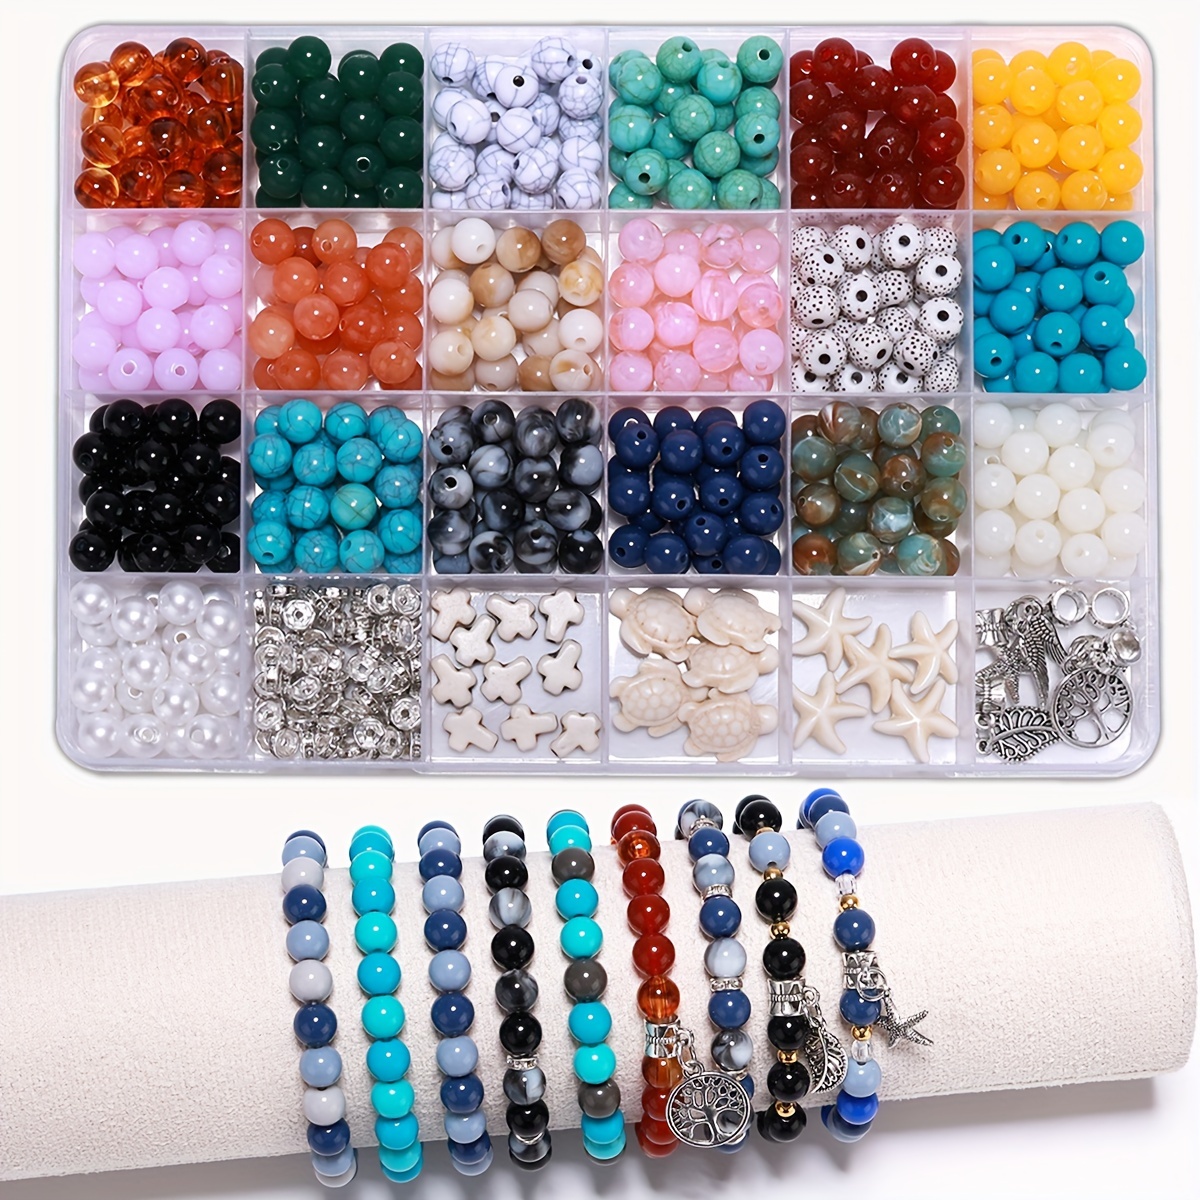 LEOBRO Pearl Beads for Bracelet Making, 720PCS Bracelet Making Kit Beads  for Bracelets, Friendship Bead Bracelet Kit, Pearl Beads Gold Beads for